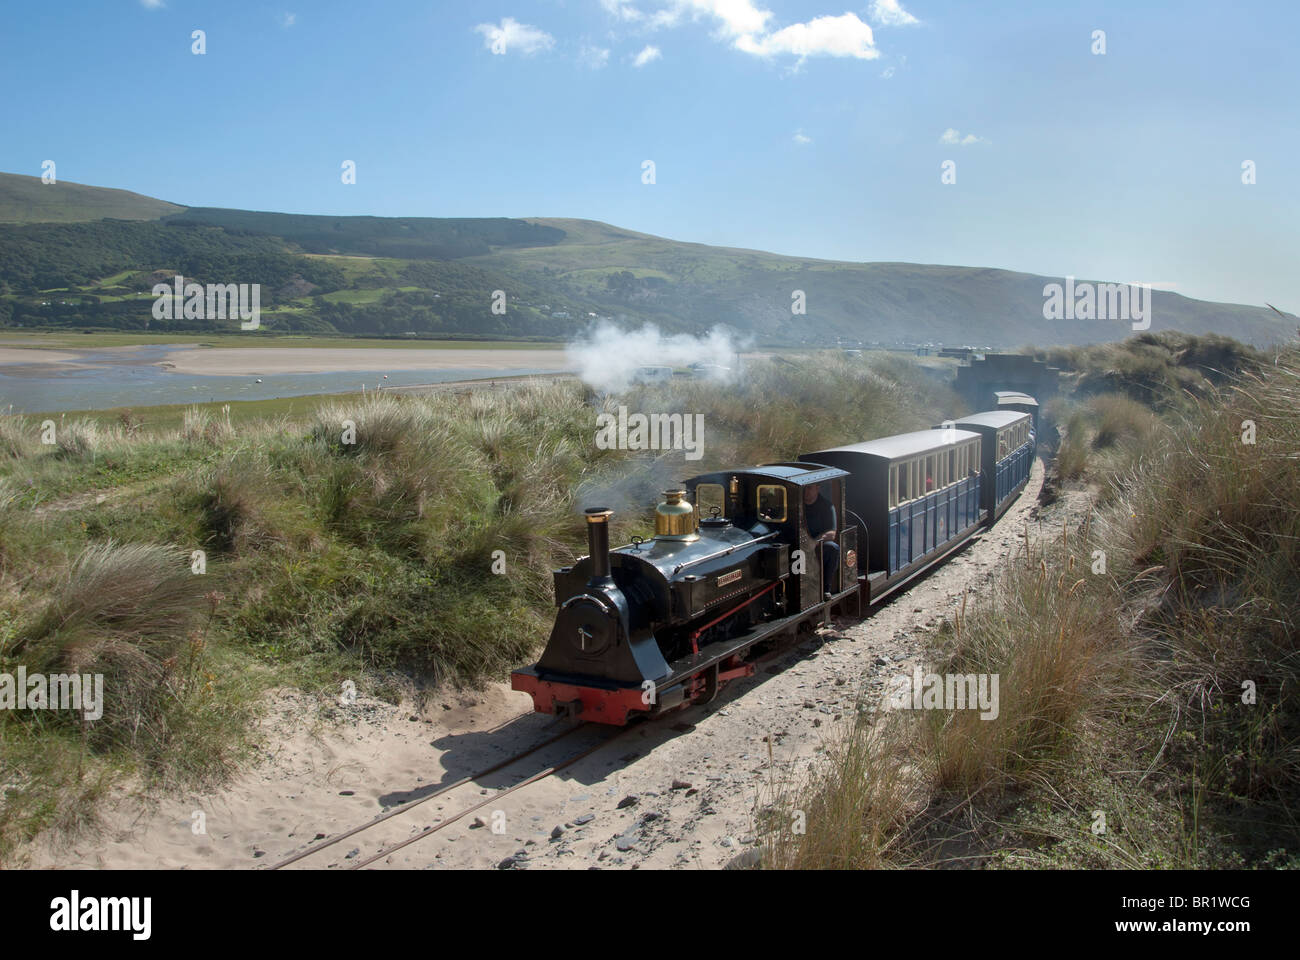 Fairbourne Narrow Gauge railway through the Sand dunes- Locomotive is named Beddgelert Stock Photo